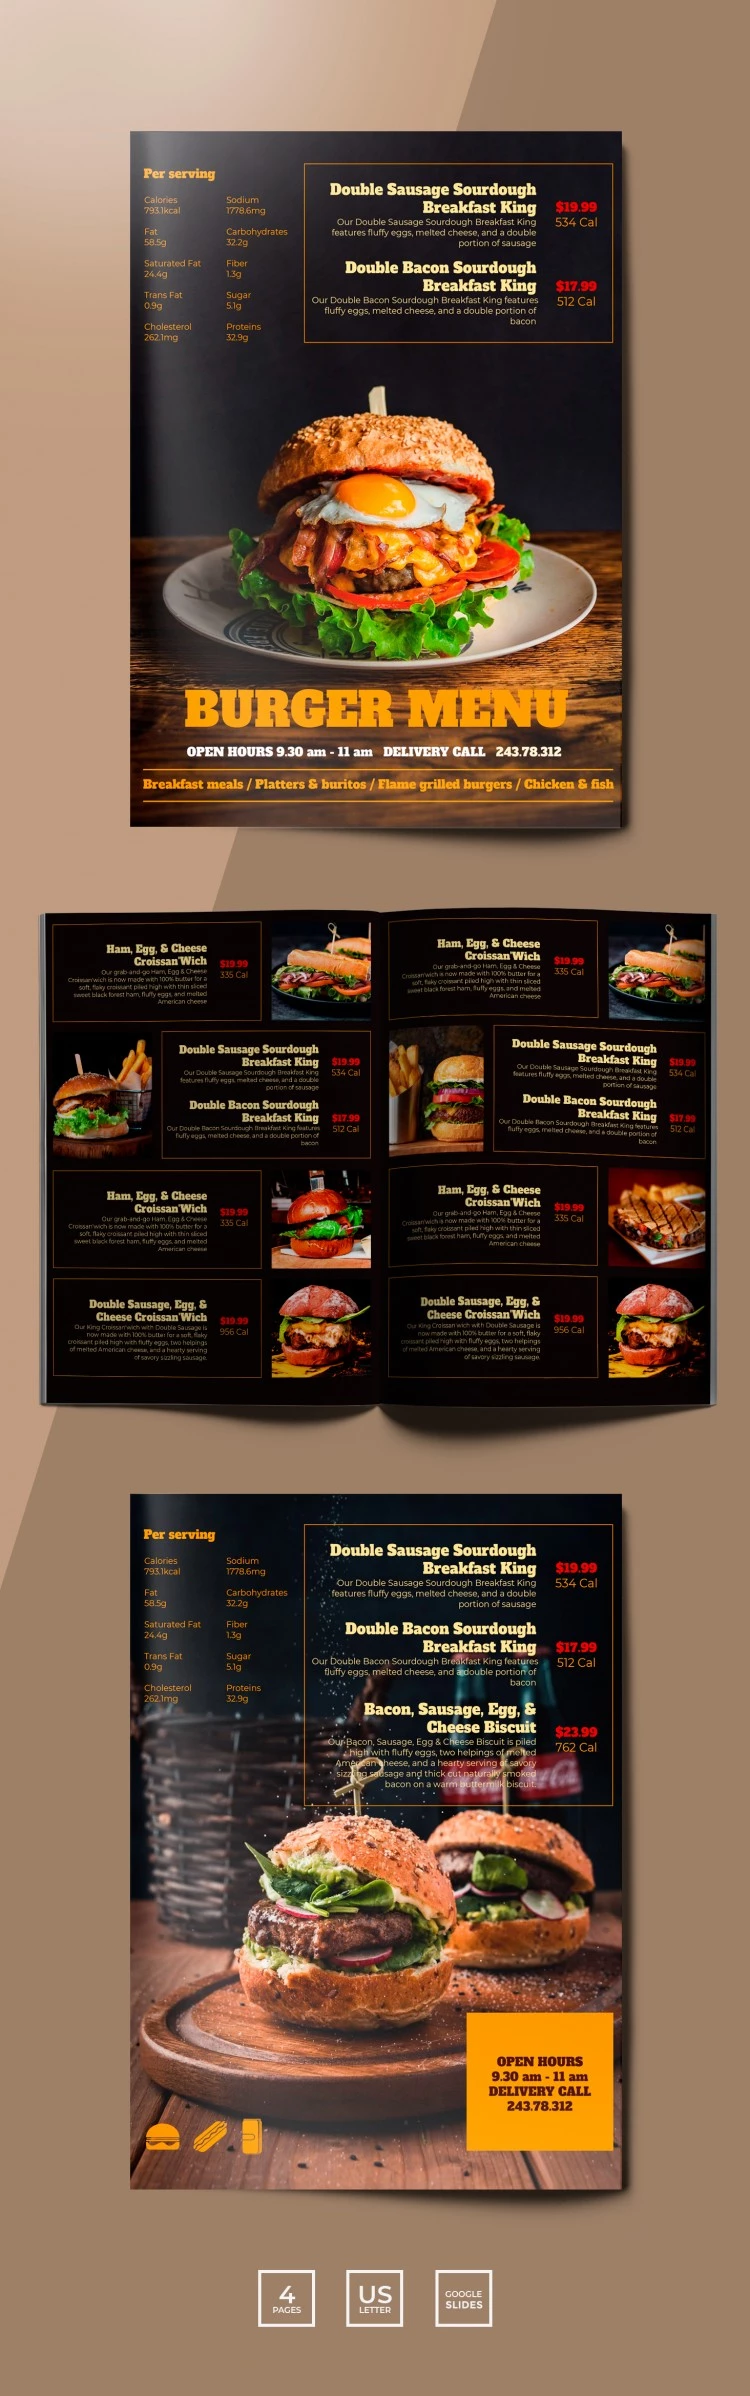 Menu de hambúrguer do restaurante - free Google Docs Template - 10061760